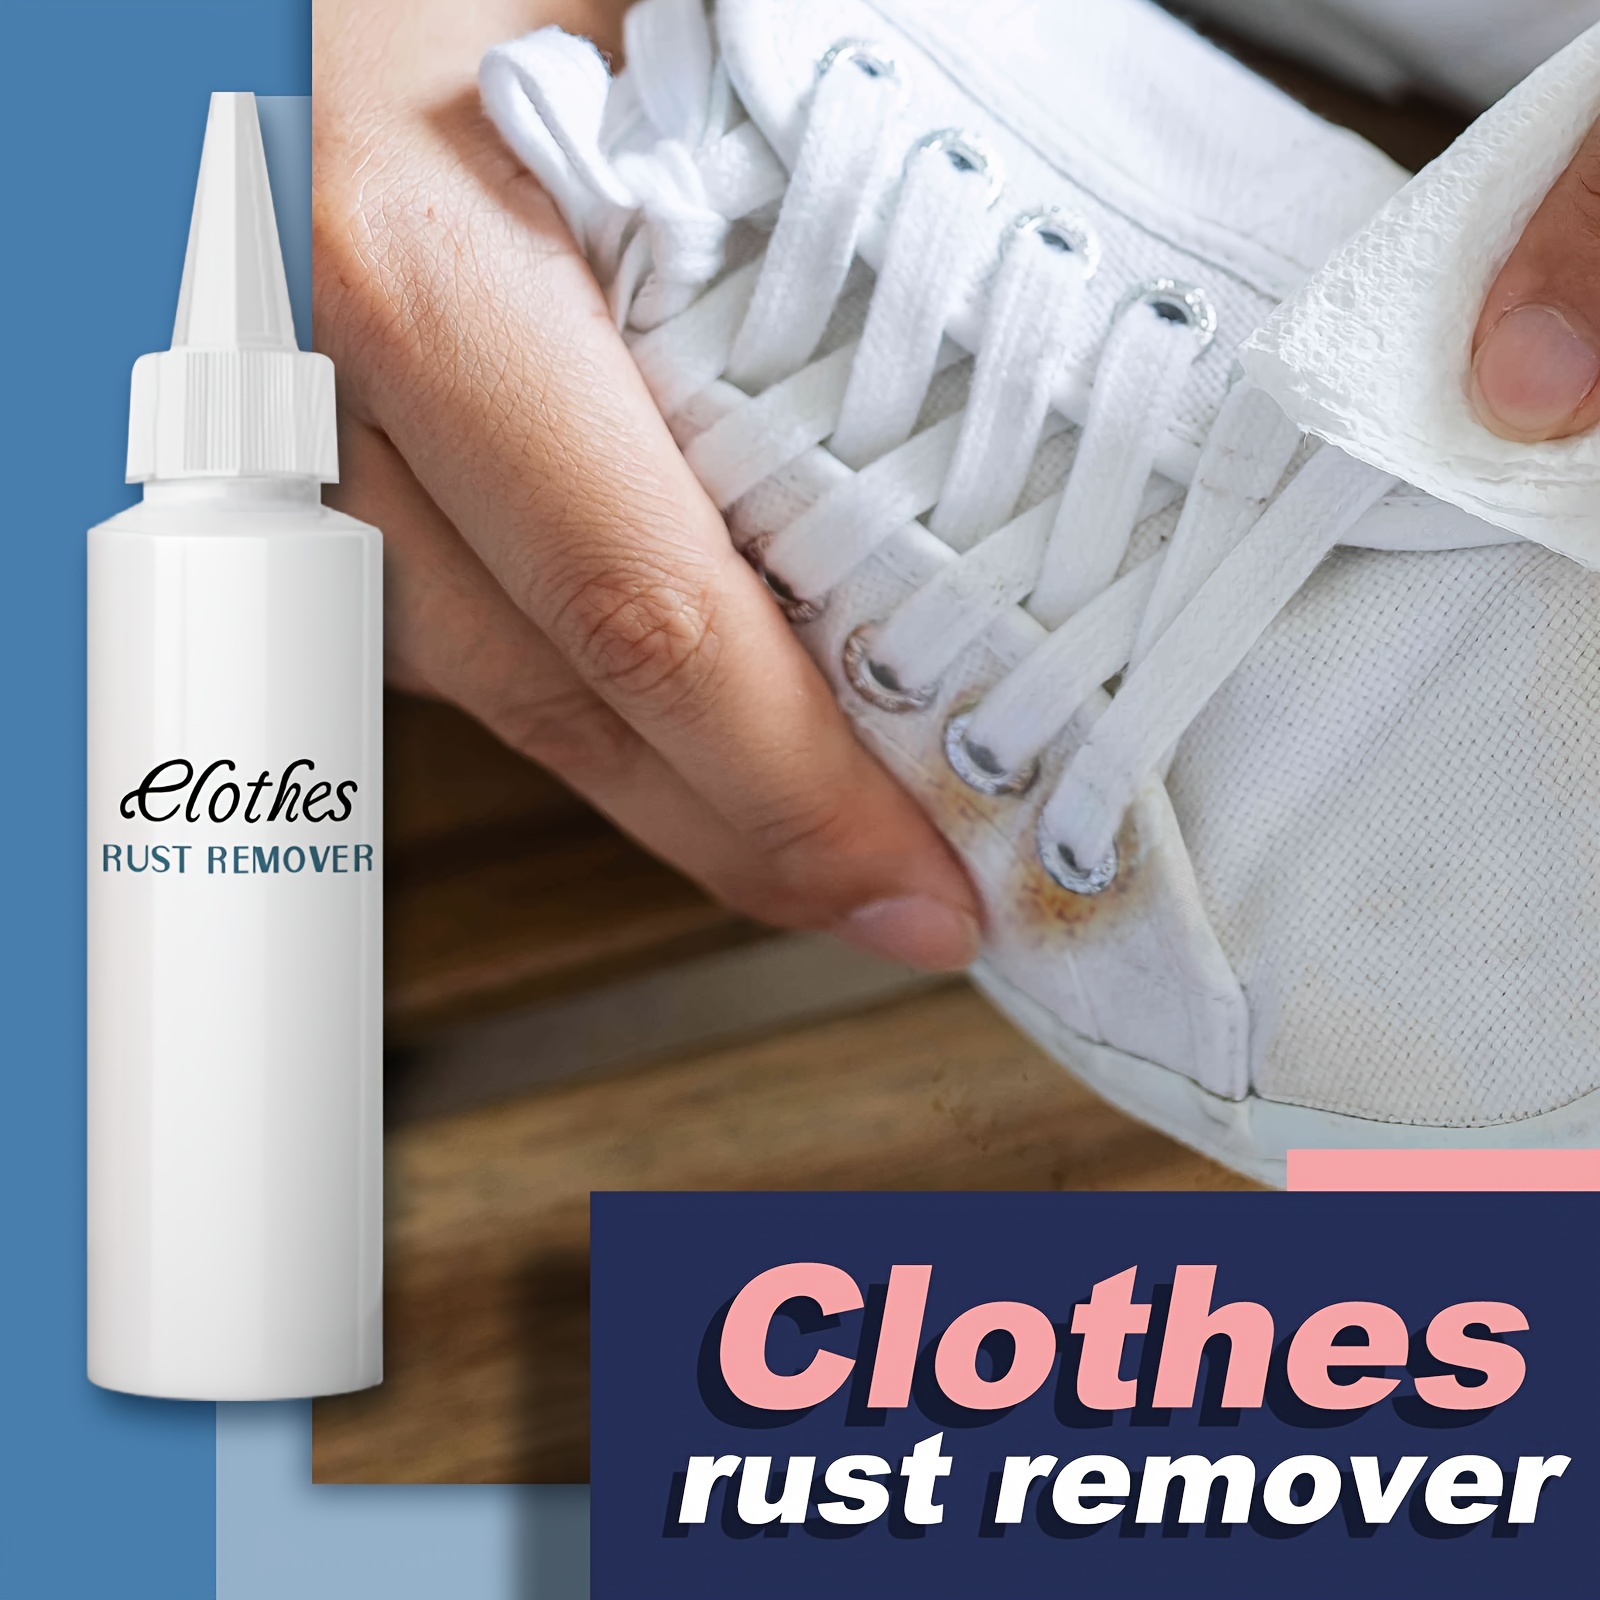 La crème nettoyante pour chaussures blanches WREESH est un puissant  détachant qui élimine efficacement la saleté avec un baume nettoyant sans  eau